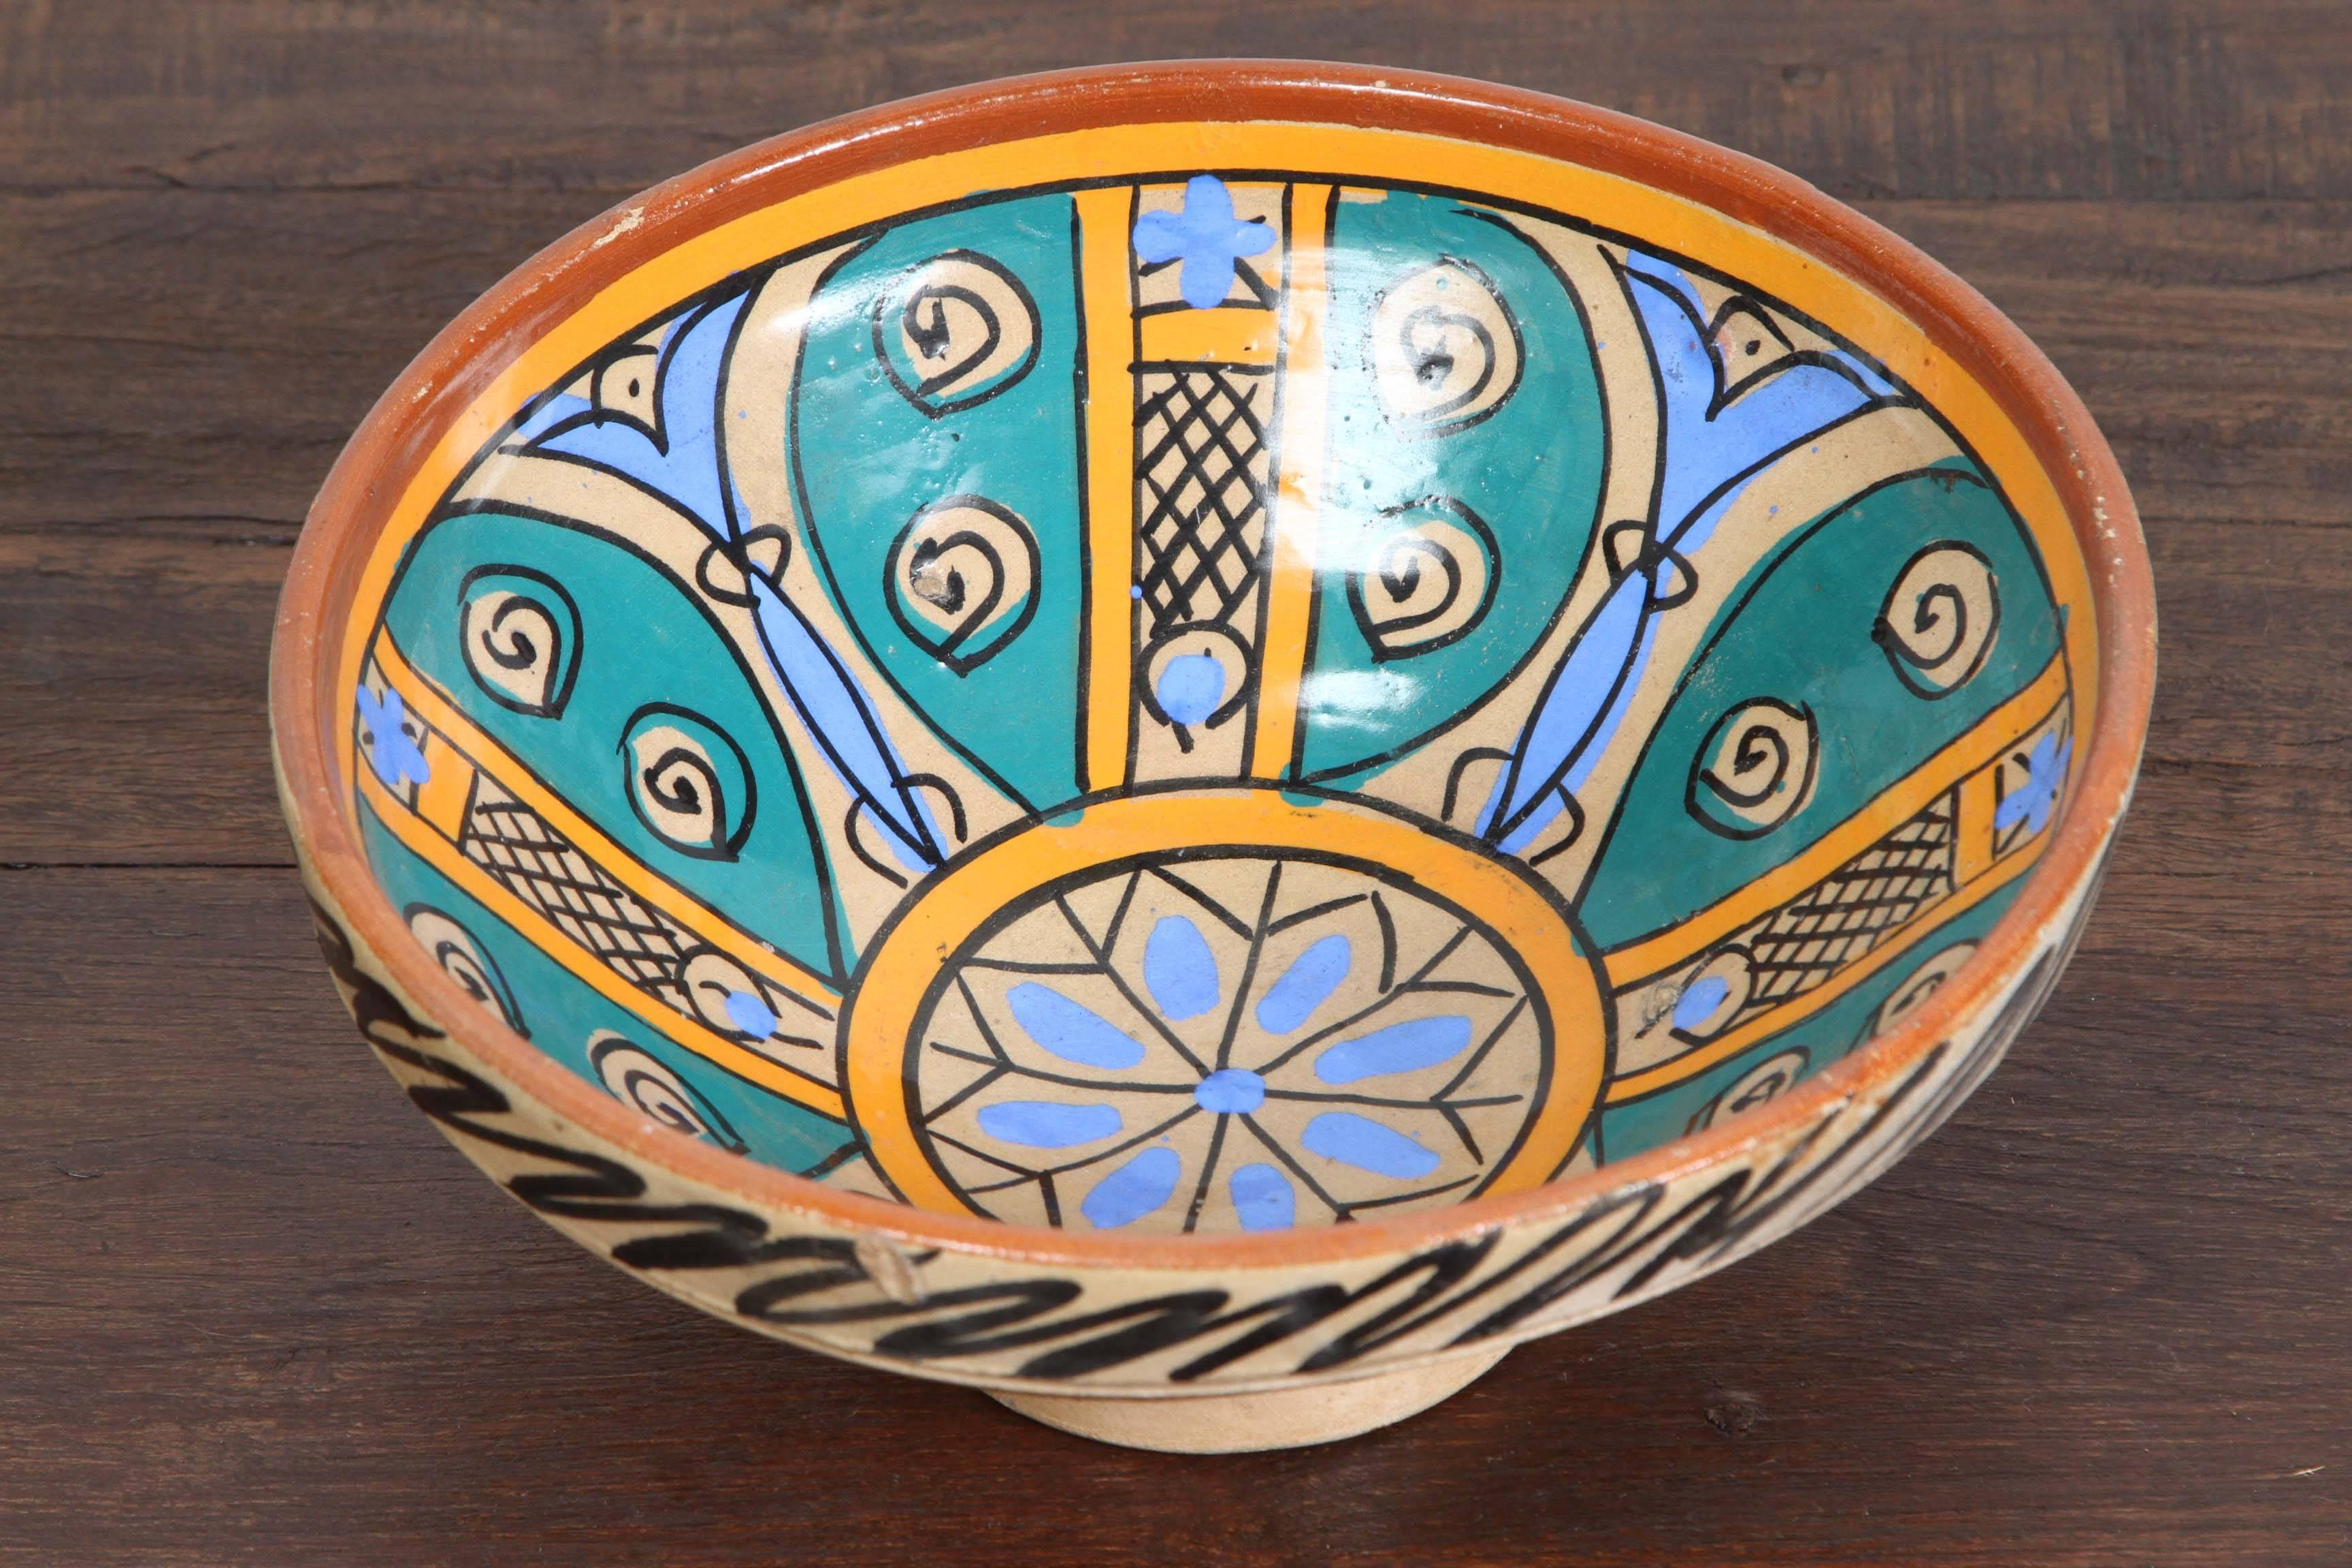 Un bol en poterie peint sous glaçure avec un motif naïf abstrait, bleu, ocre, brun.
Bol en poterie marocaine ancienne de forme arrondie profonde avec un bord aplati s'élevant sur un pied annulaire bas, peint à la main à l'extérieur avec un décor